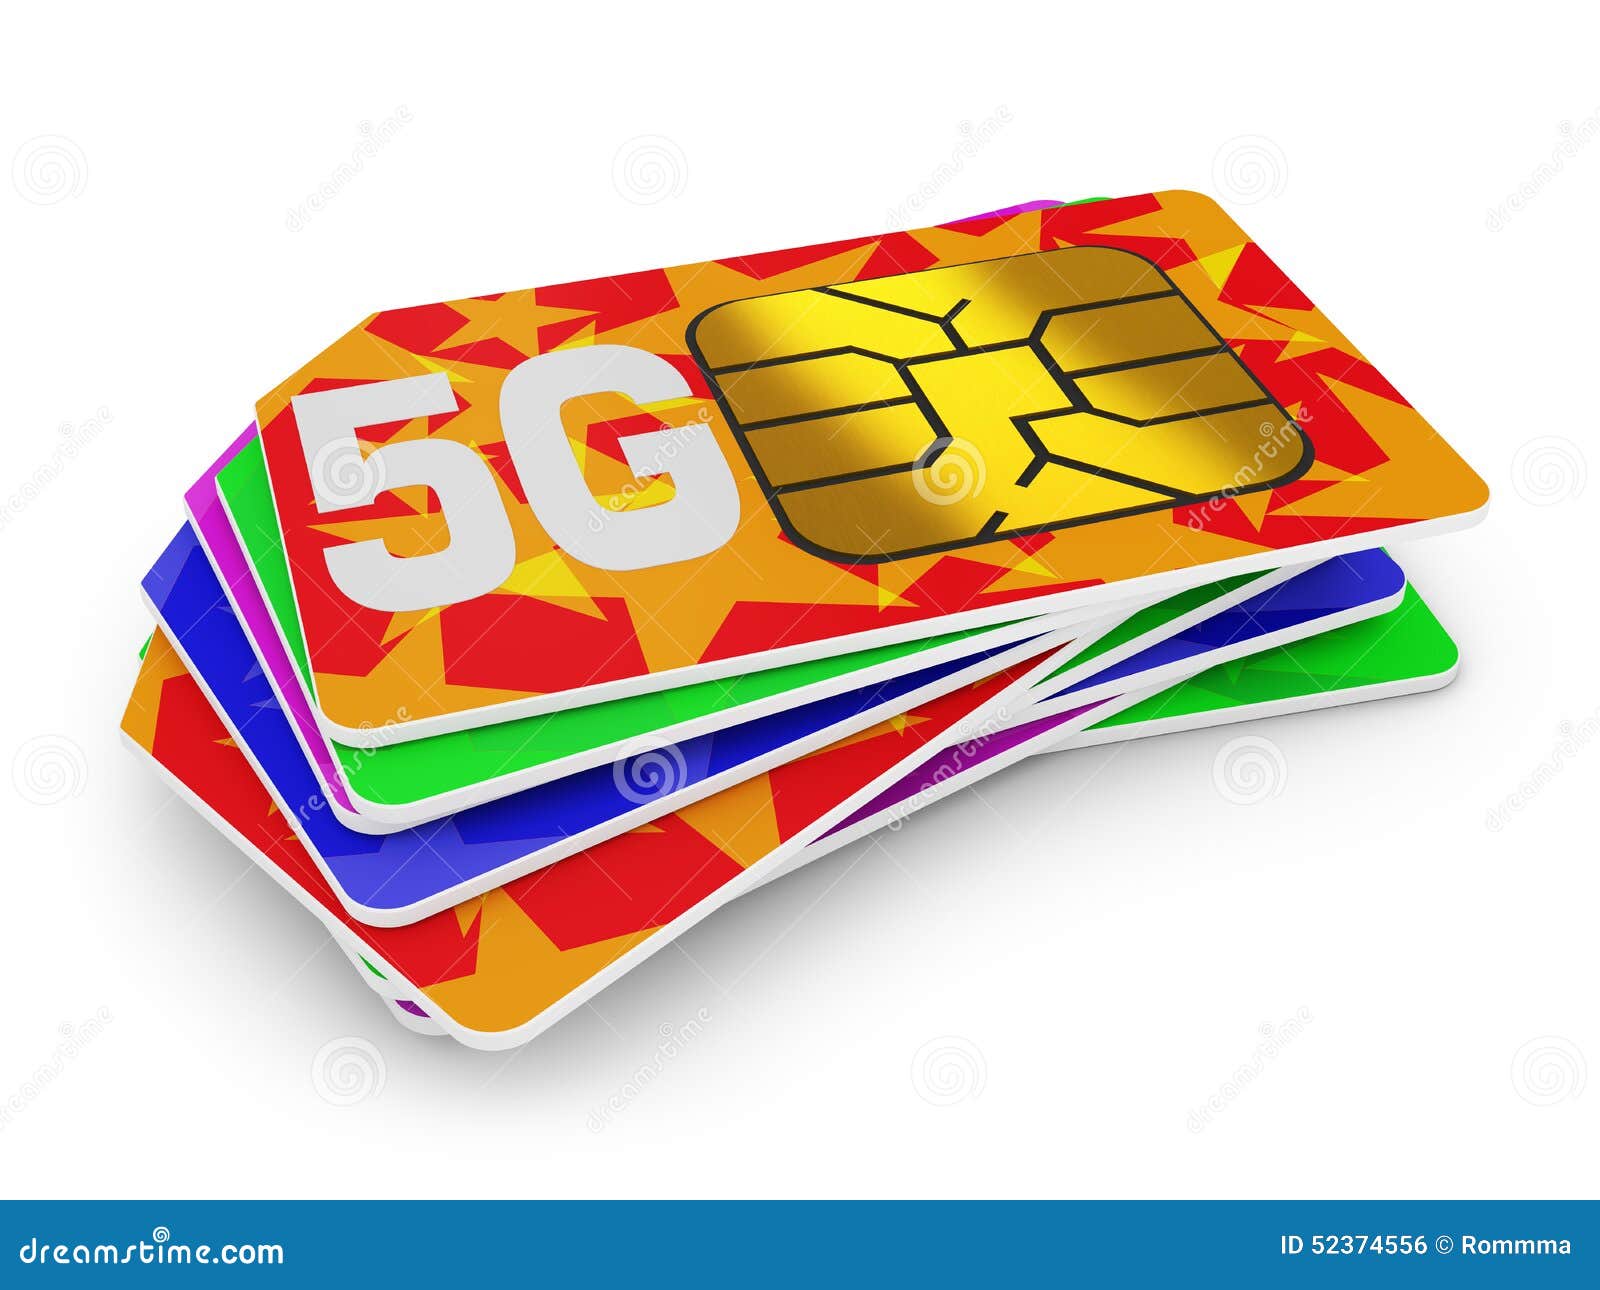 5kart. Симка 5g. SIM карта 5g. Симка для интернета 5g. Сим карта с 5g сетью.